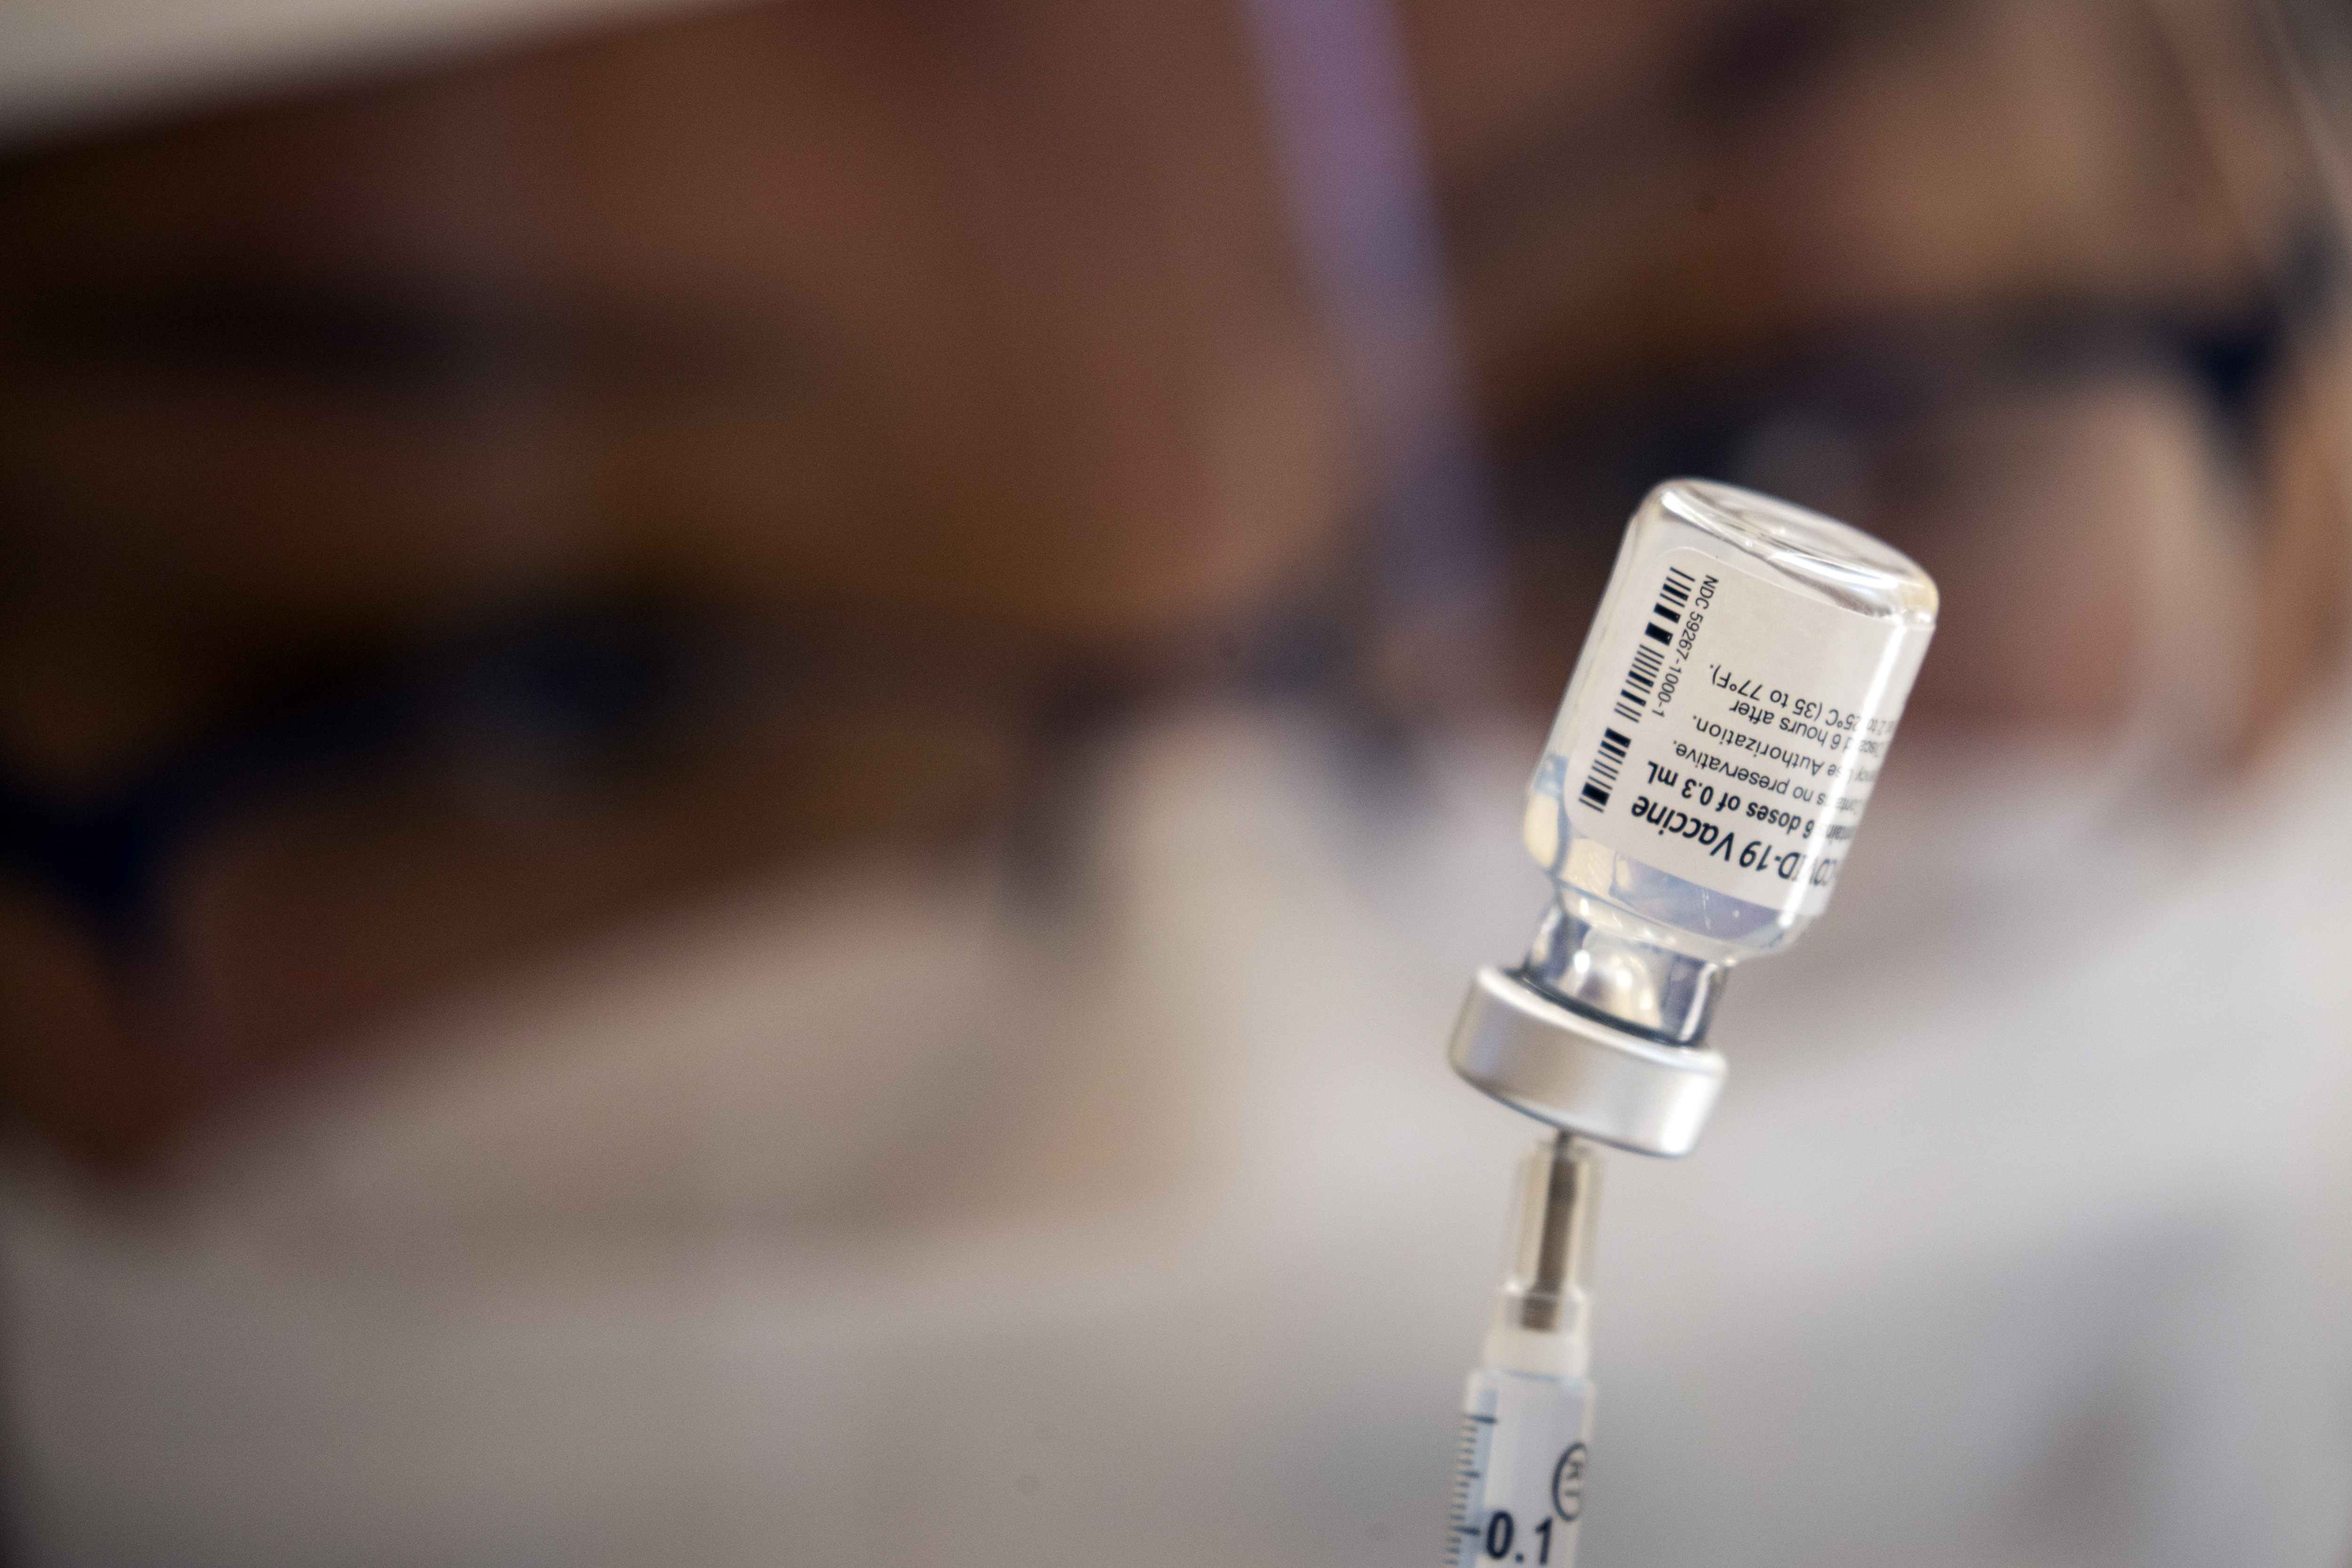 Un hombre le dio una golpiza a una enfermera porque vacunó a su esposa “sin su permiso”